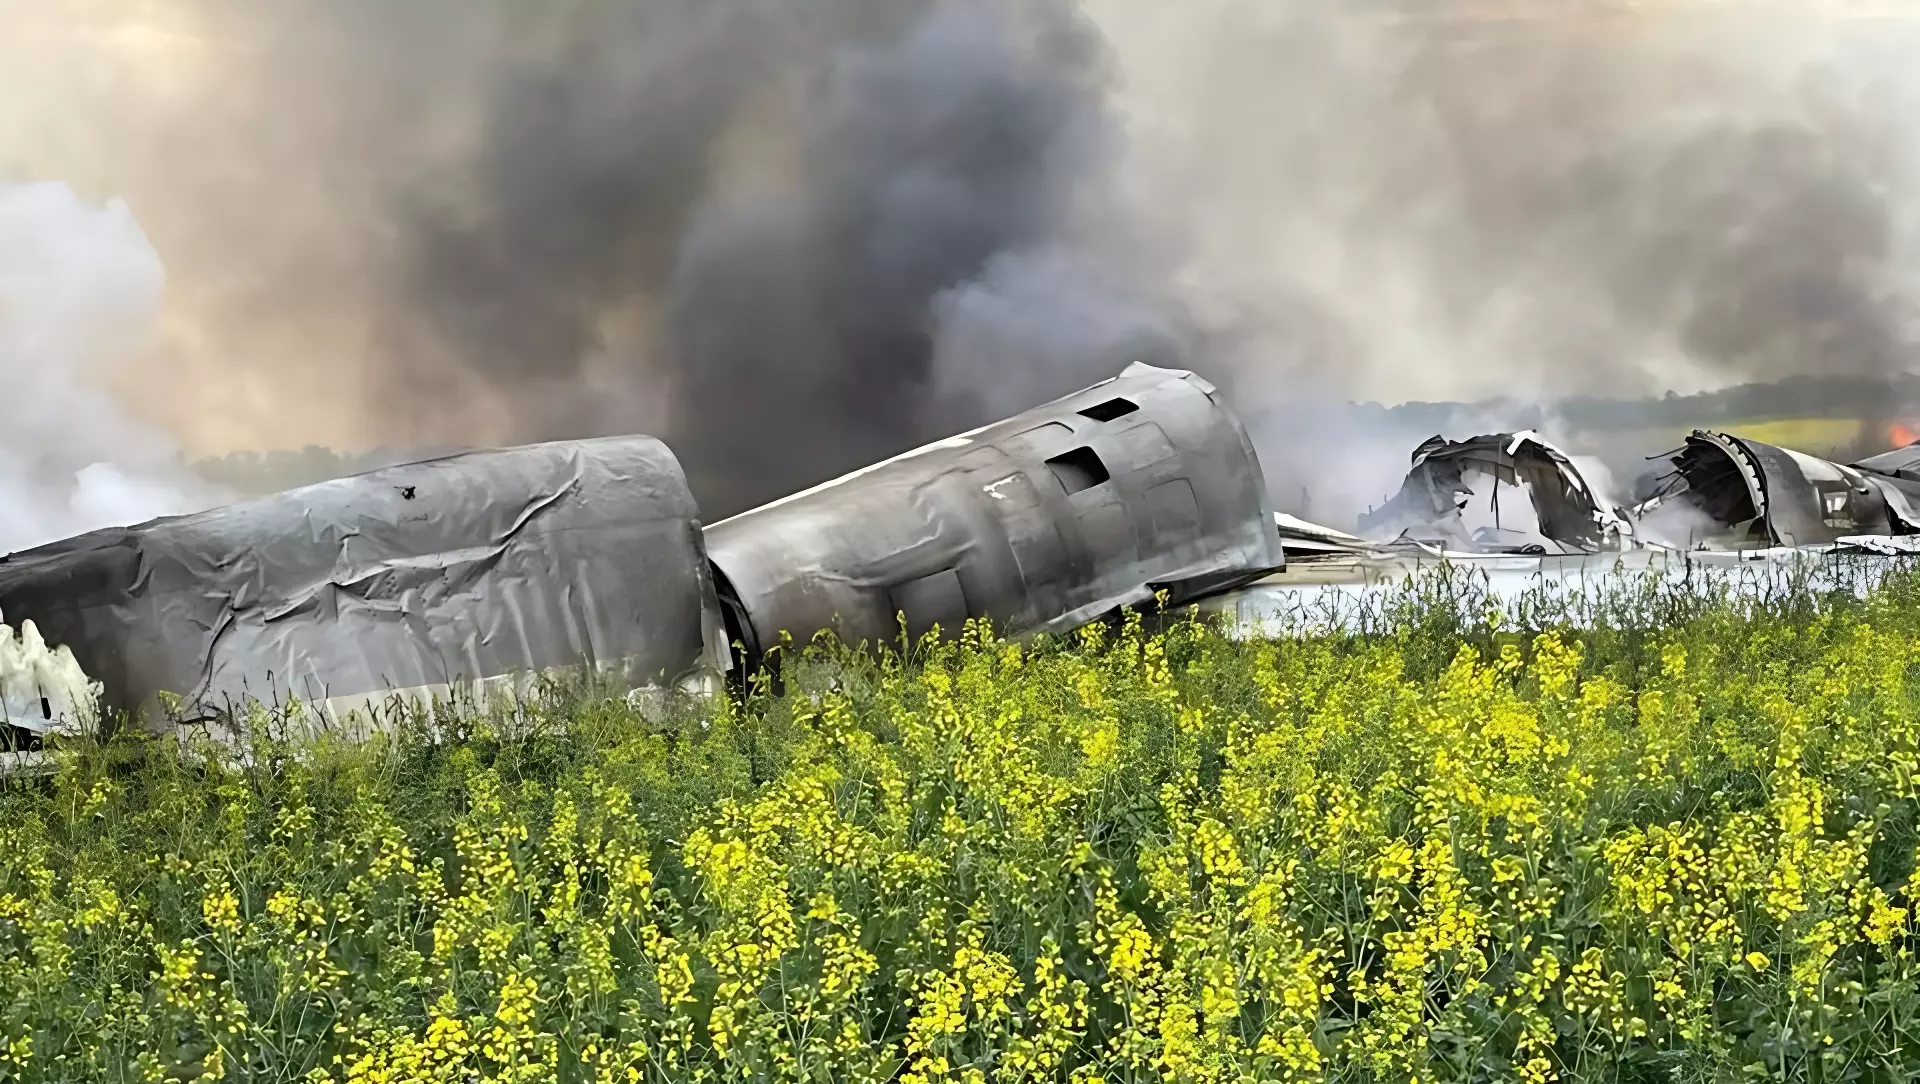 Четвертый член экипажа разбившегося в Ставрополье военного самолета погиб